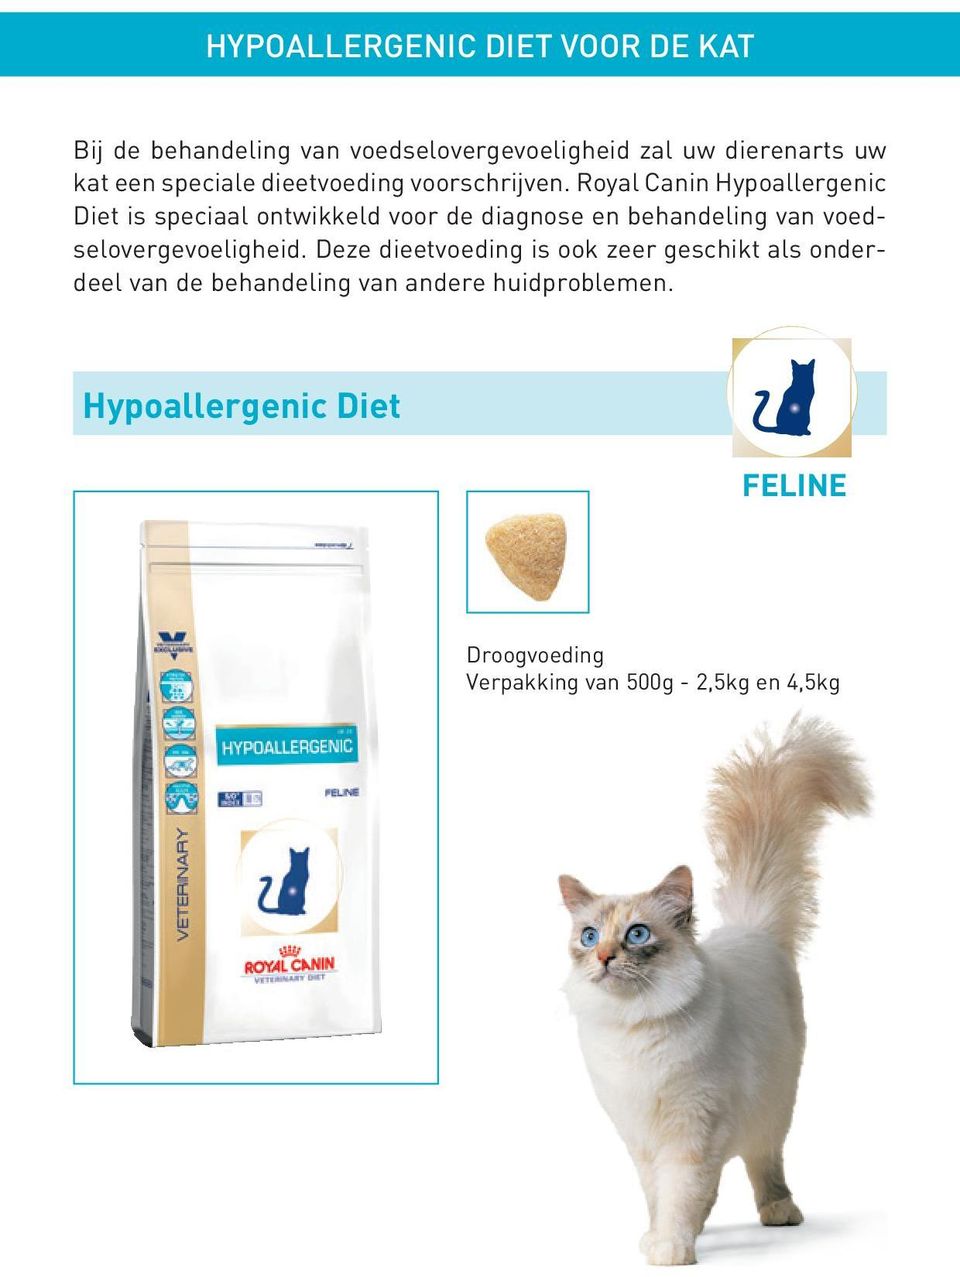 Royal Canin Hypoallergenic Diet is speciaal ontwikkeld voor de diagnose en behandeling van